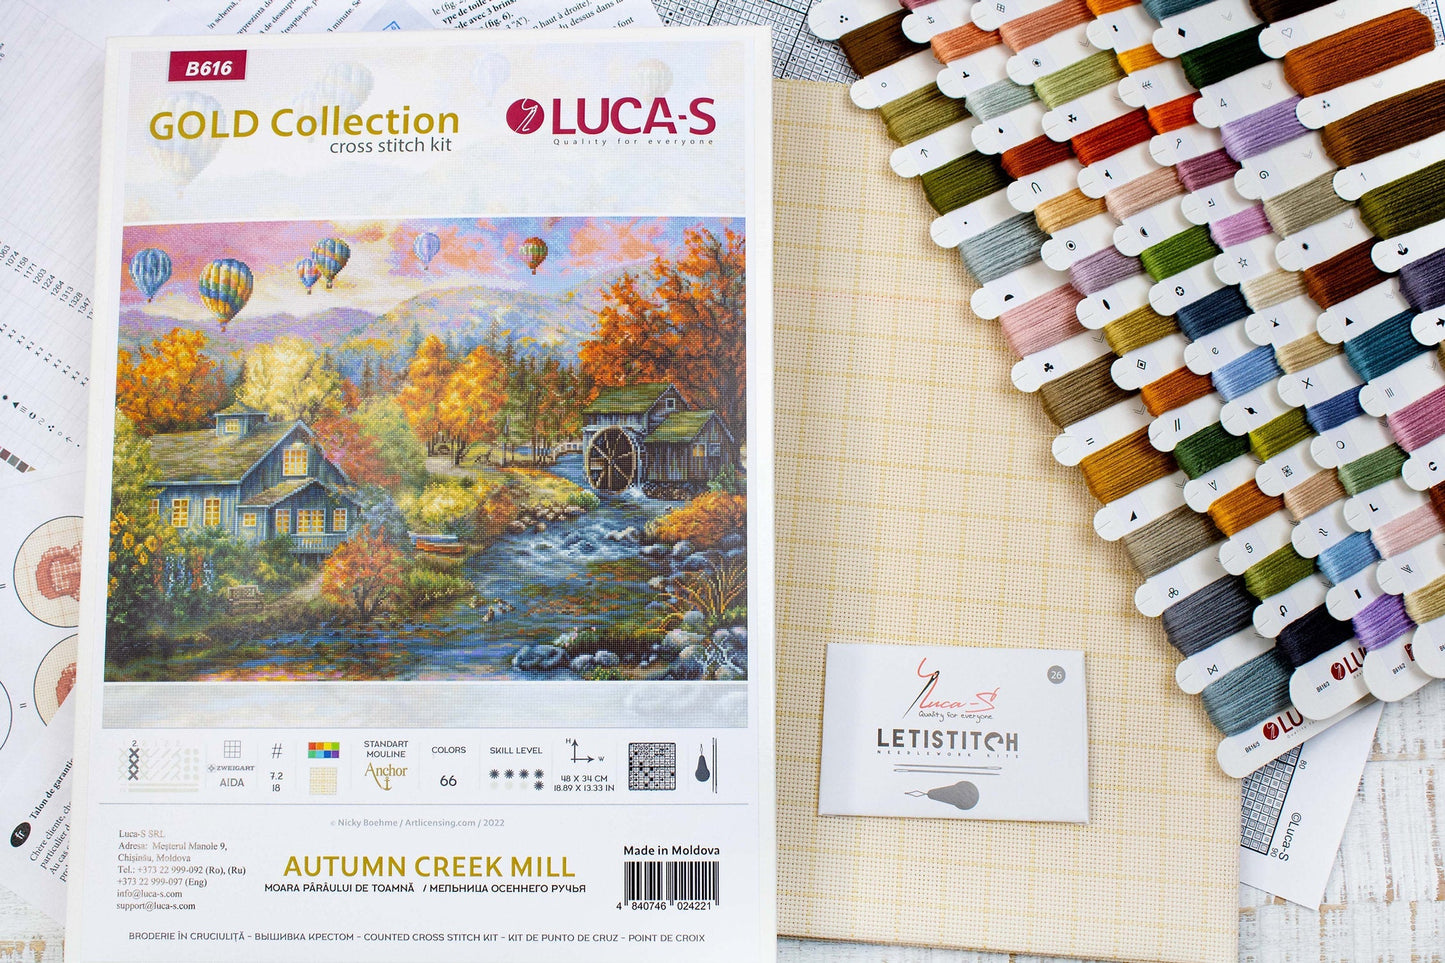 Набор для вышивки крестом Luca-S - Мельница Осеннего ручья, B616